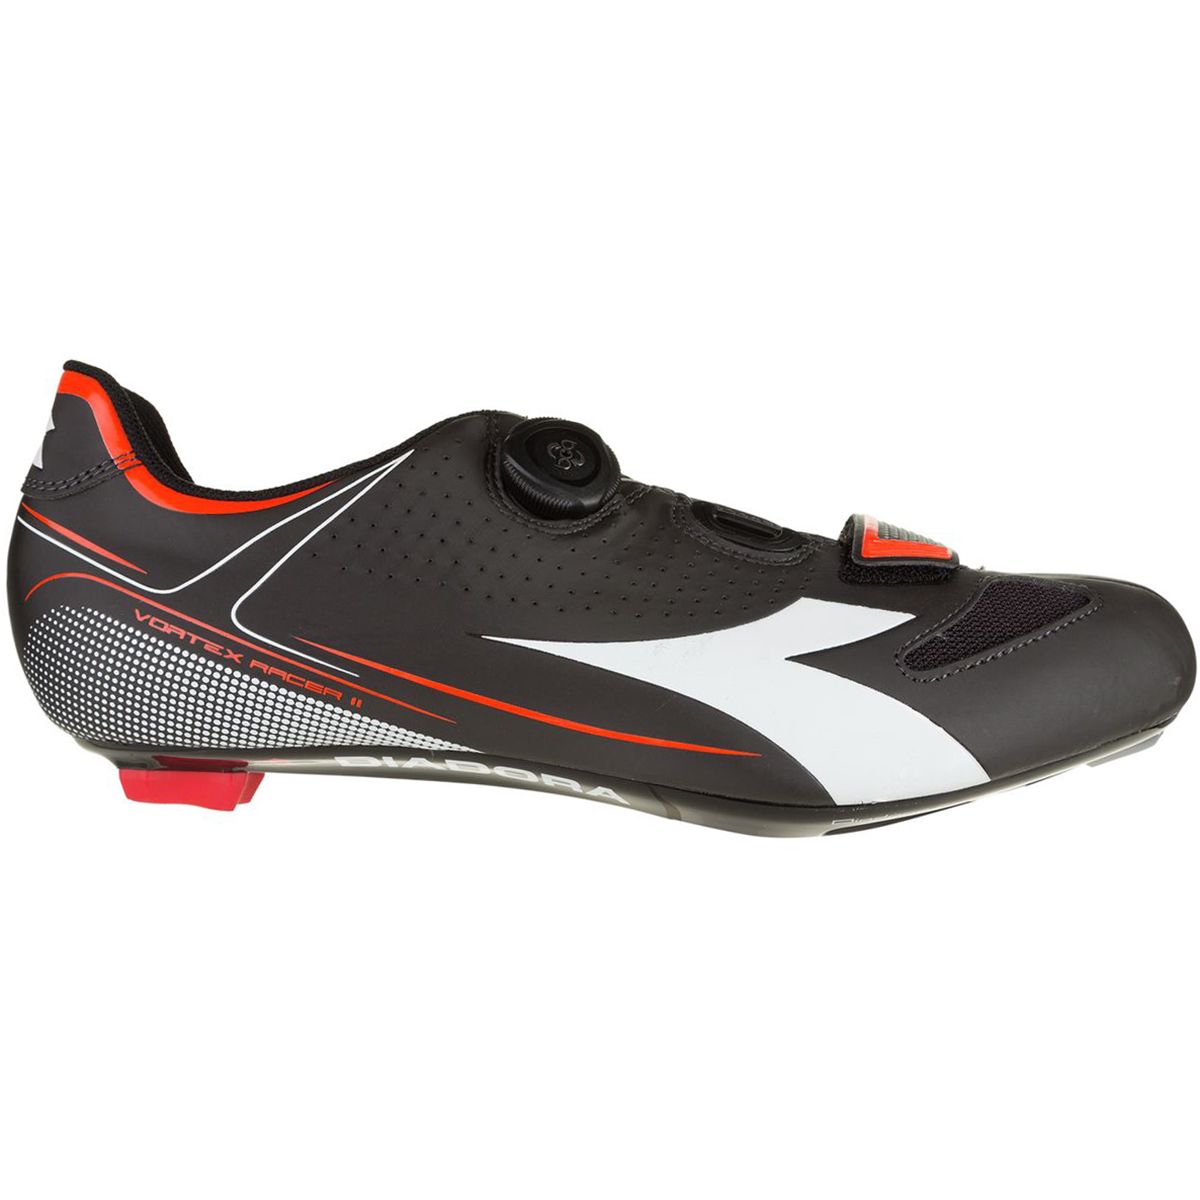 Diadora Vortex Racer II Shoes Men's